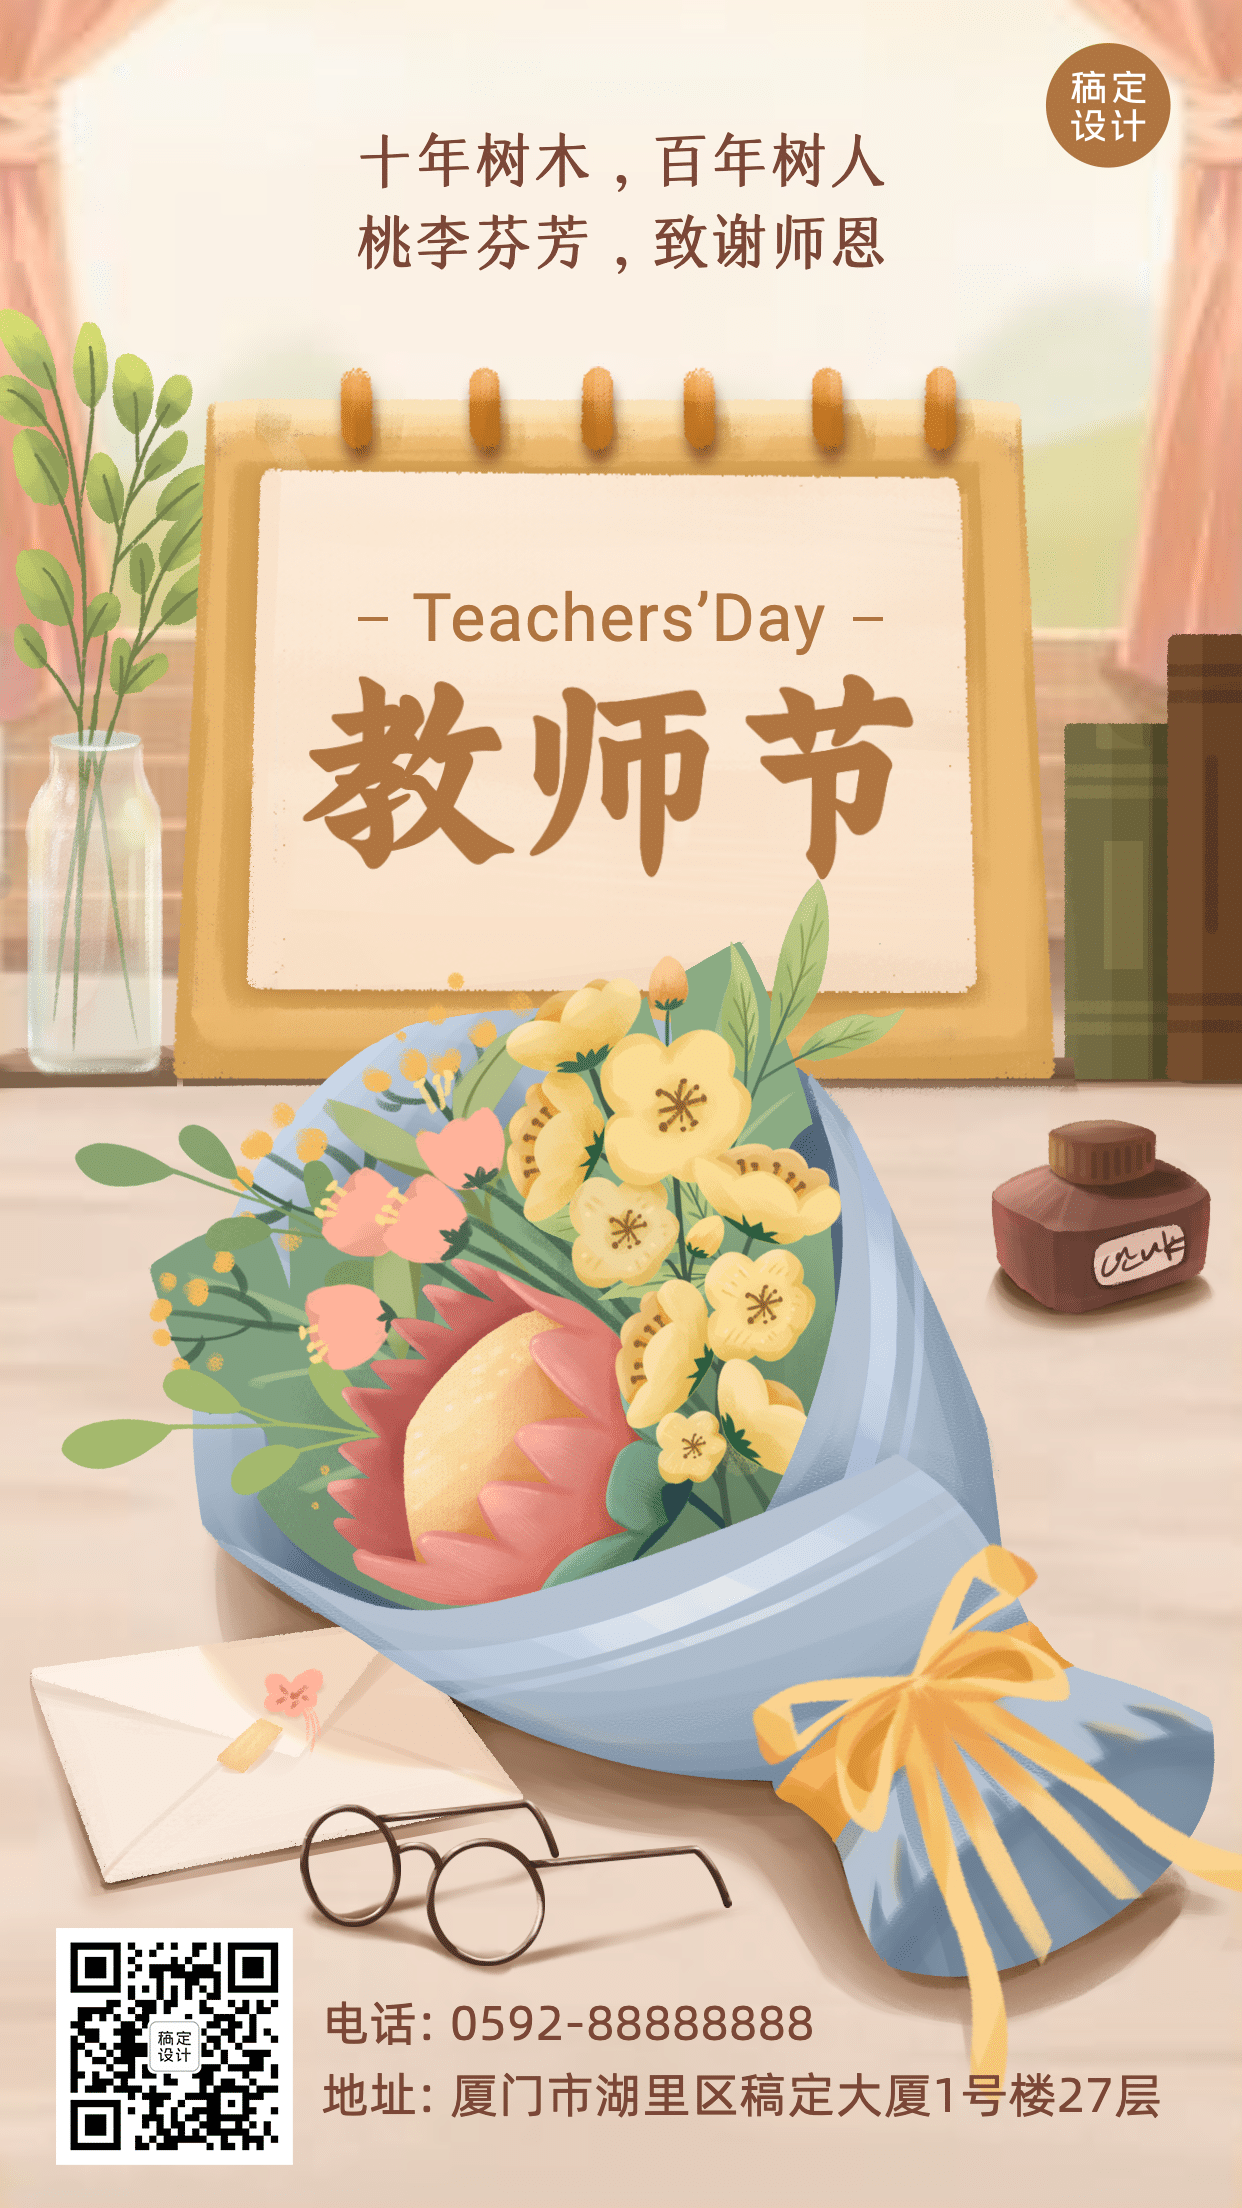 教师节快乐祝福鲜花手绘手机海报